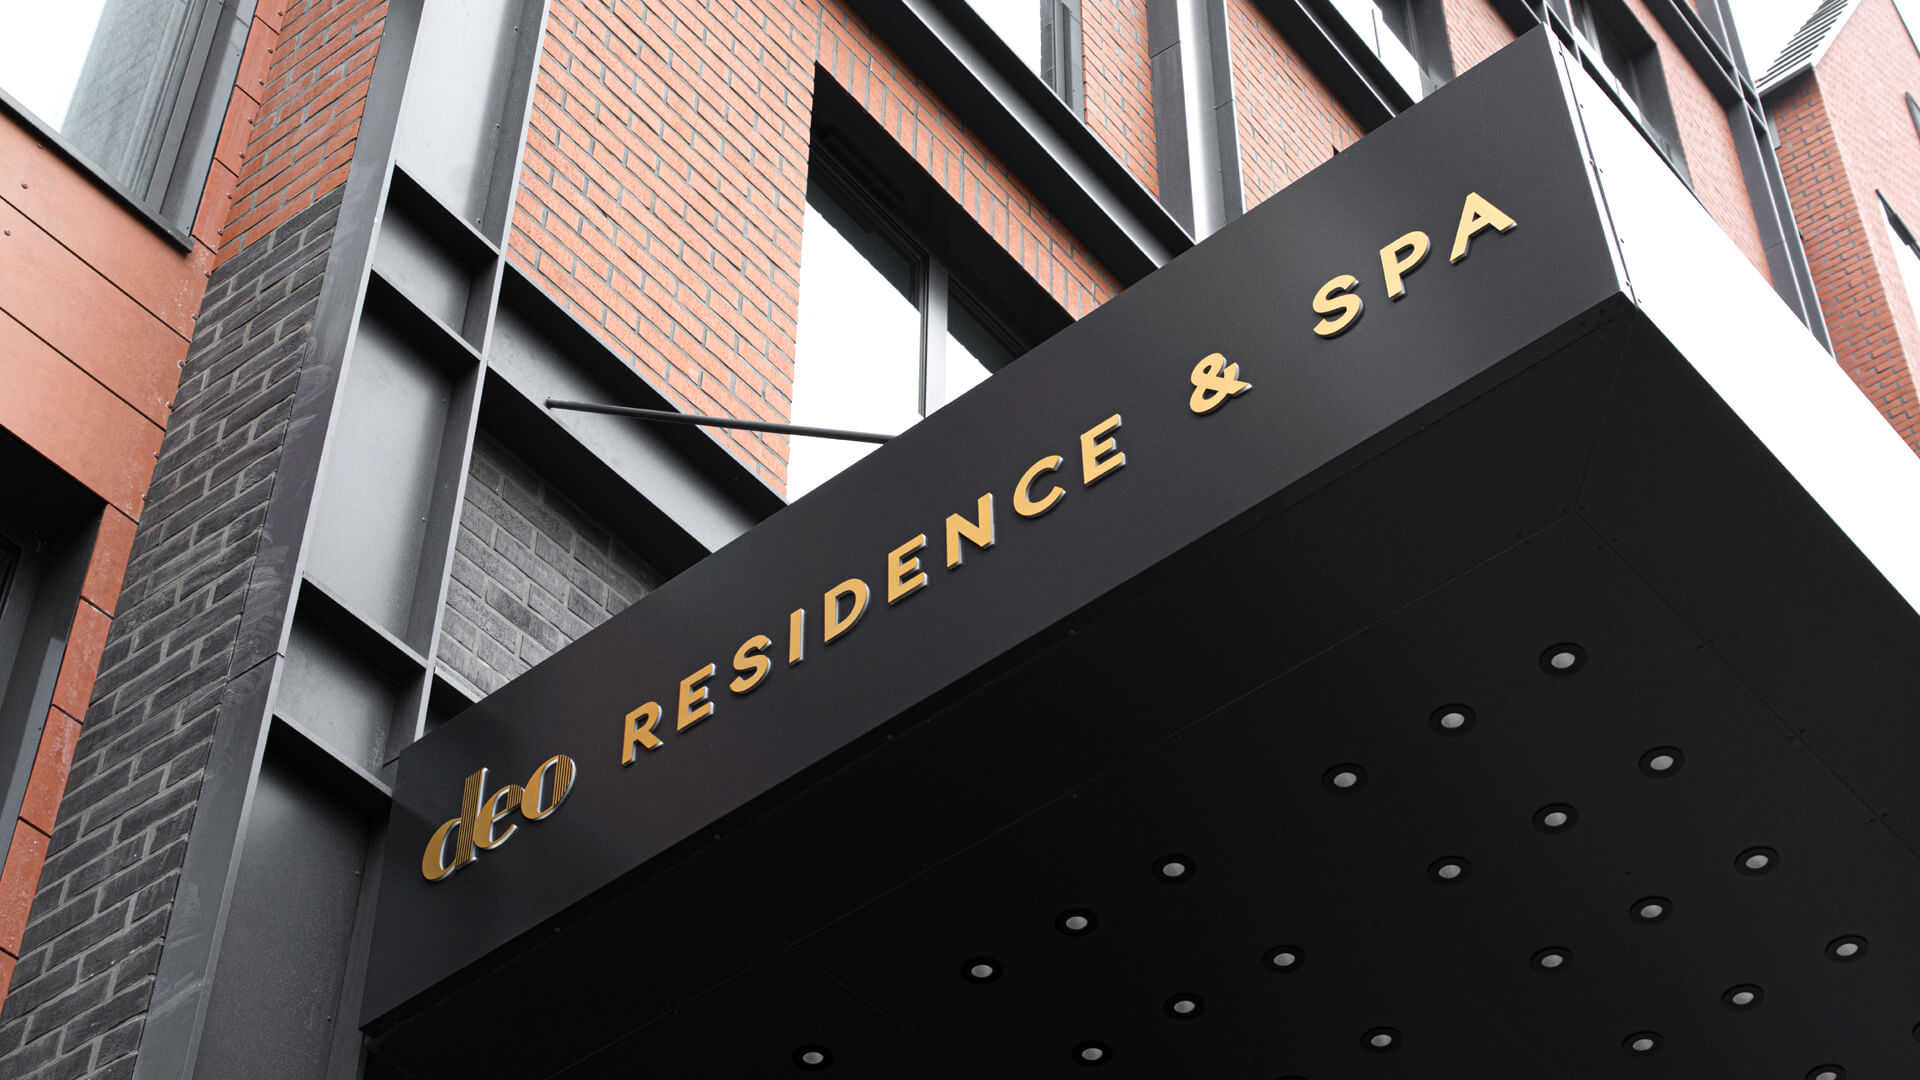 Coffret DEO Residence & SPA - Coffre avec lettres dorées au-dessus de l'entrée de DEO Residence & SPA.